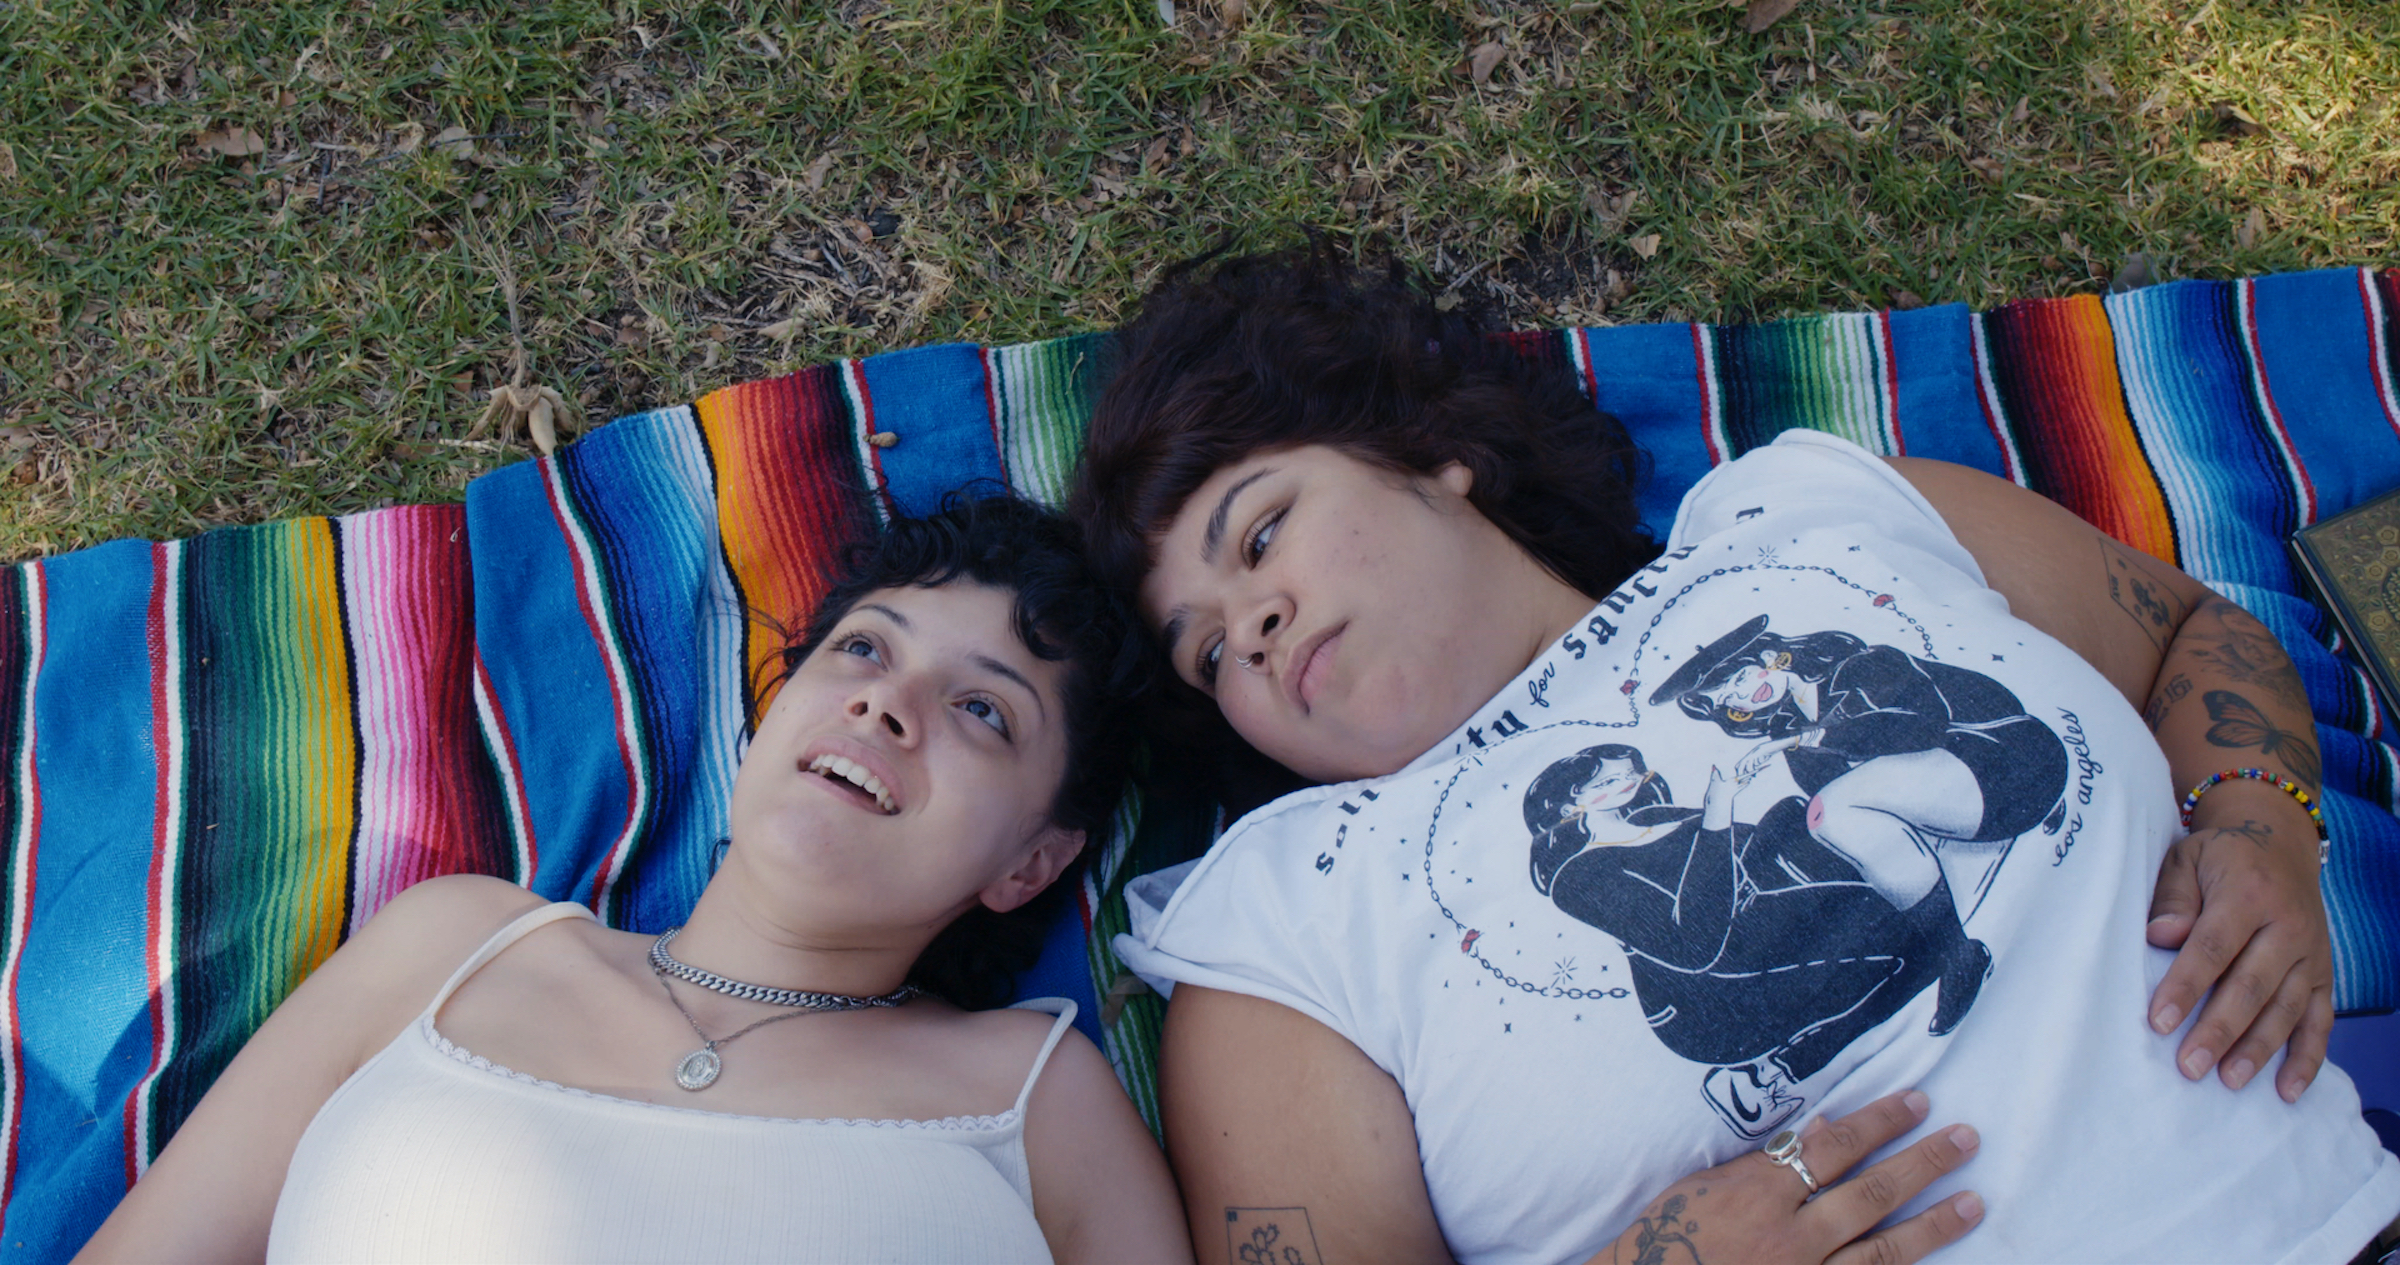 Doris Muñoz ve Jacks Haupt çimenlerin arasında rengarenk bir battaniyenin üzerinde yatıyorlardı.  (Disney'in izniyle)